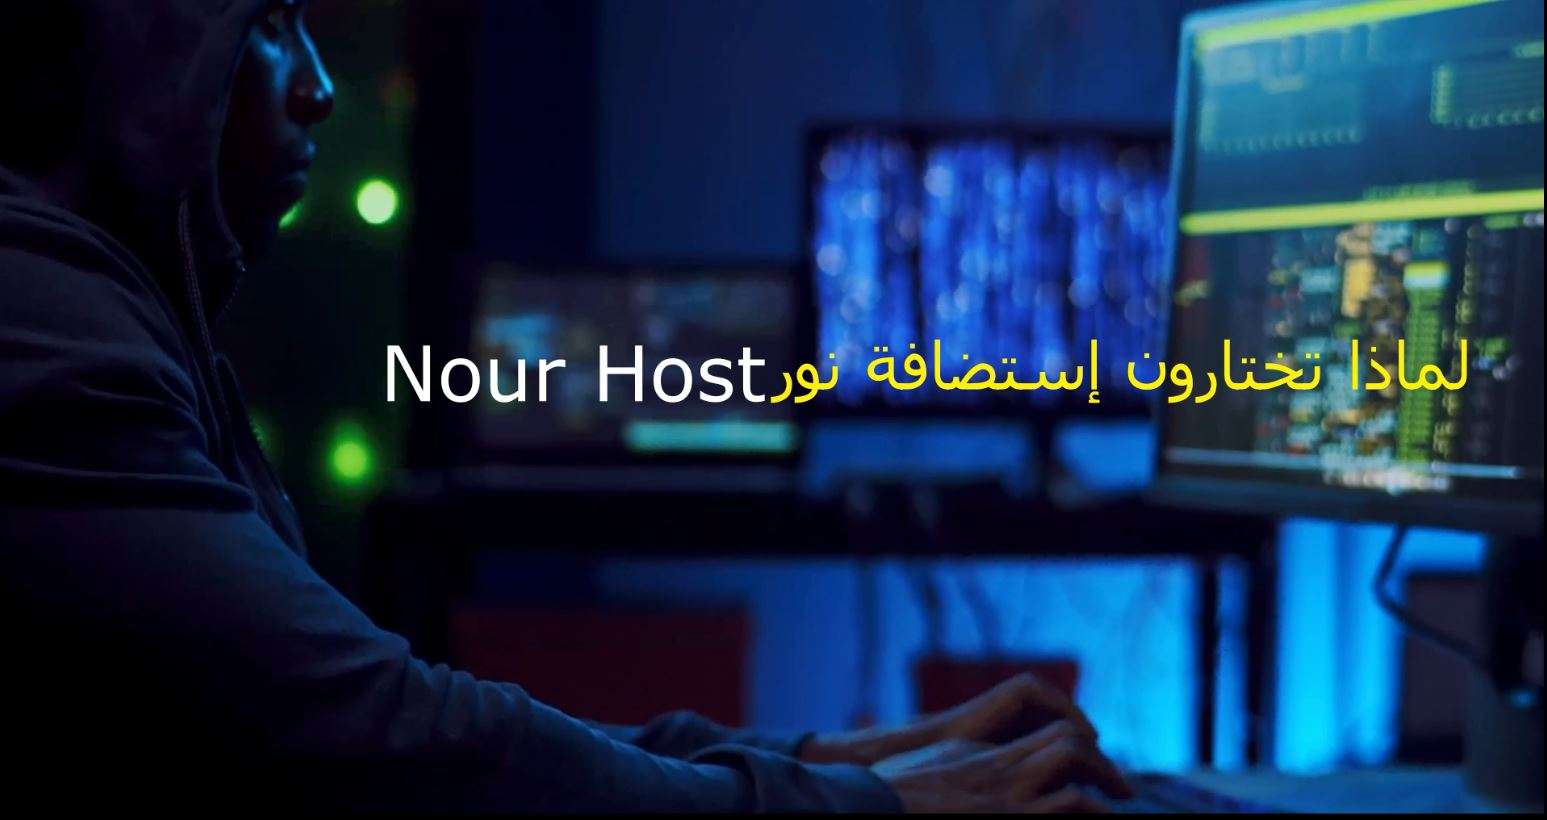 لماذا تختار إستضافة نور Nour Host ؟